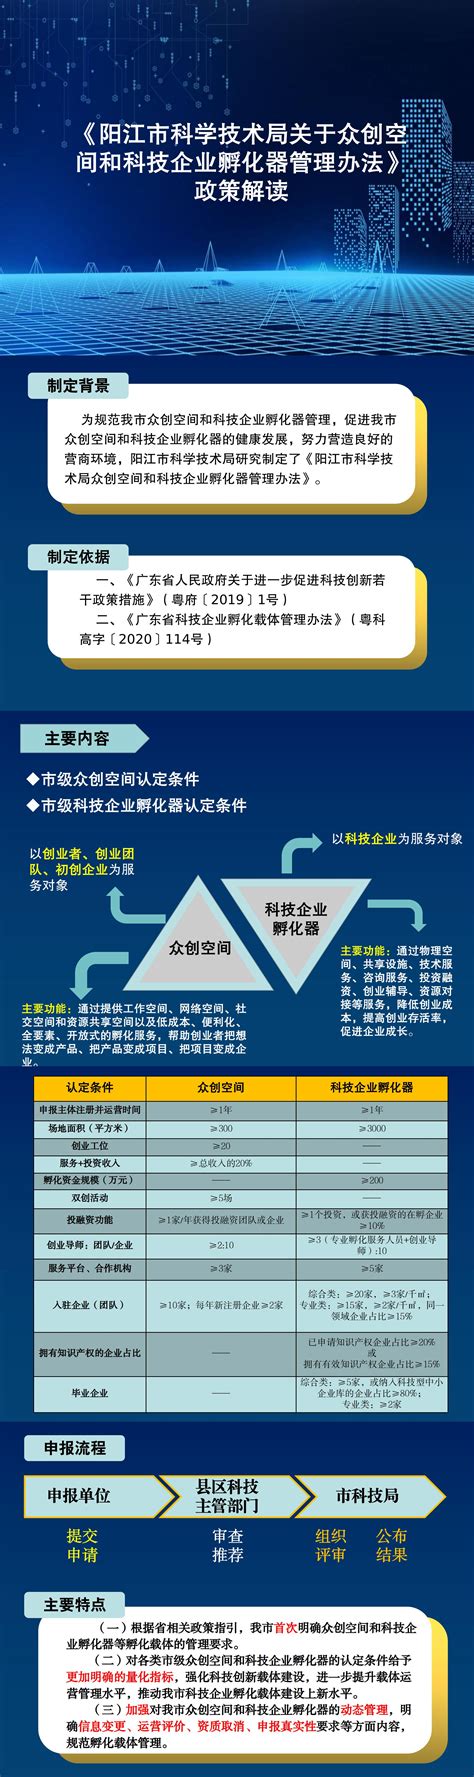 阳江国际金融中心无线对讲系统-威仕普